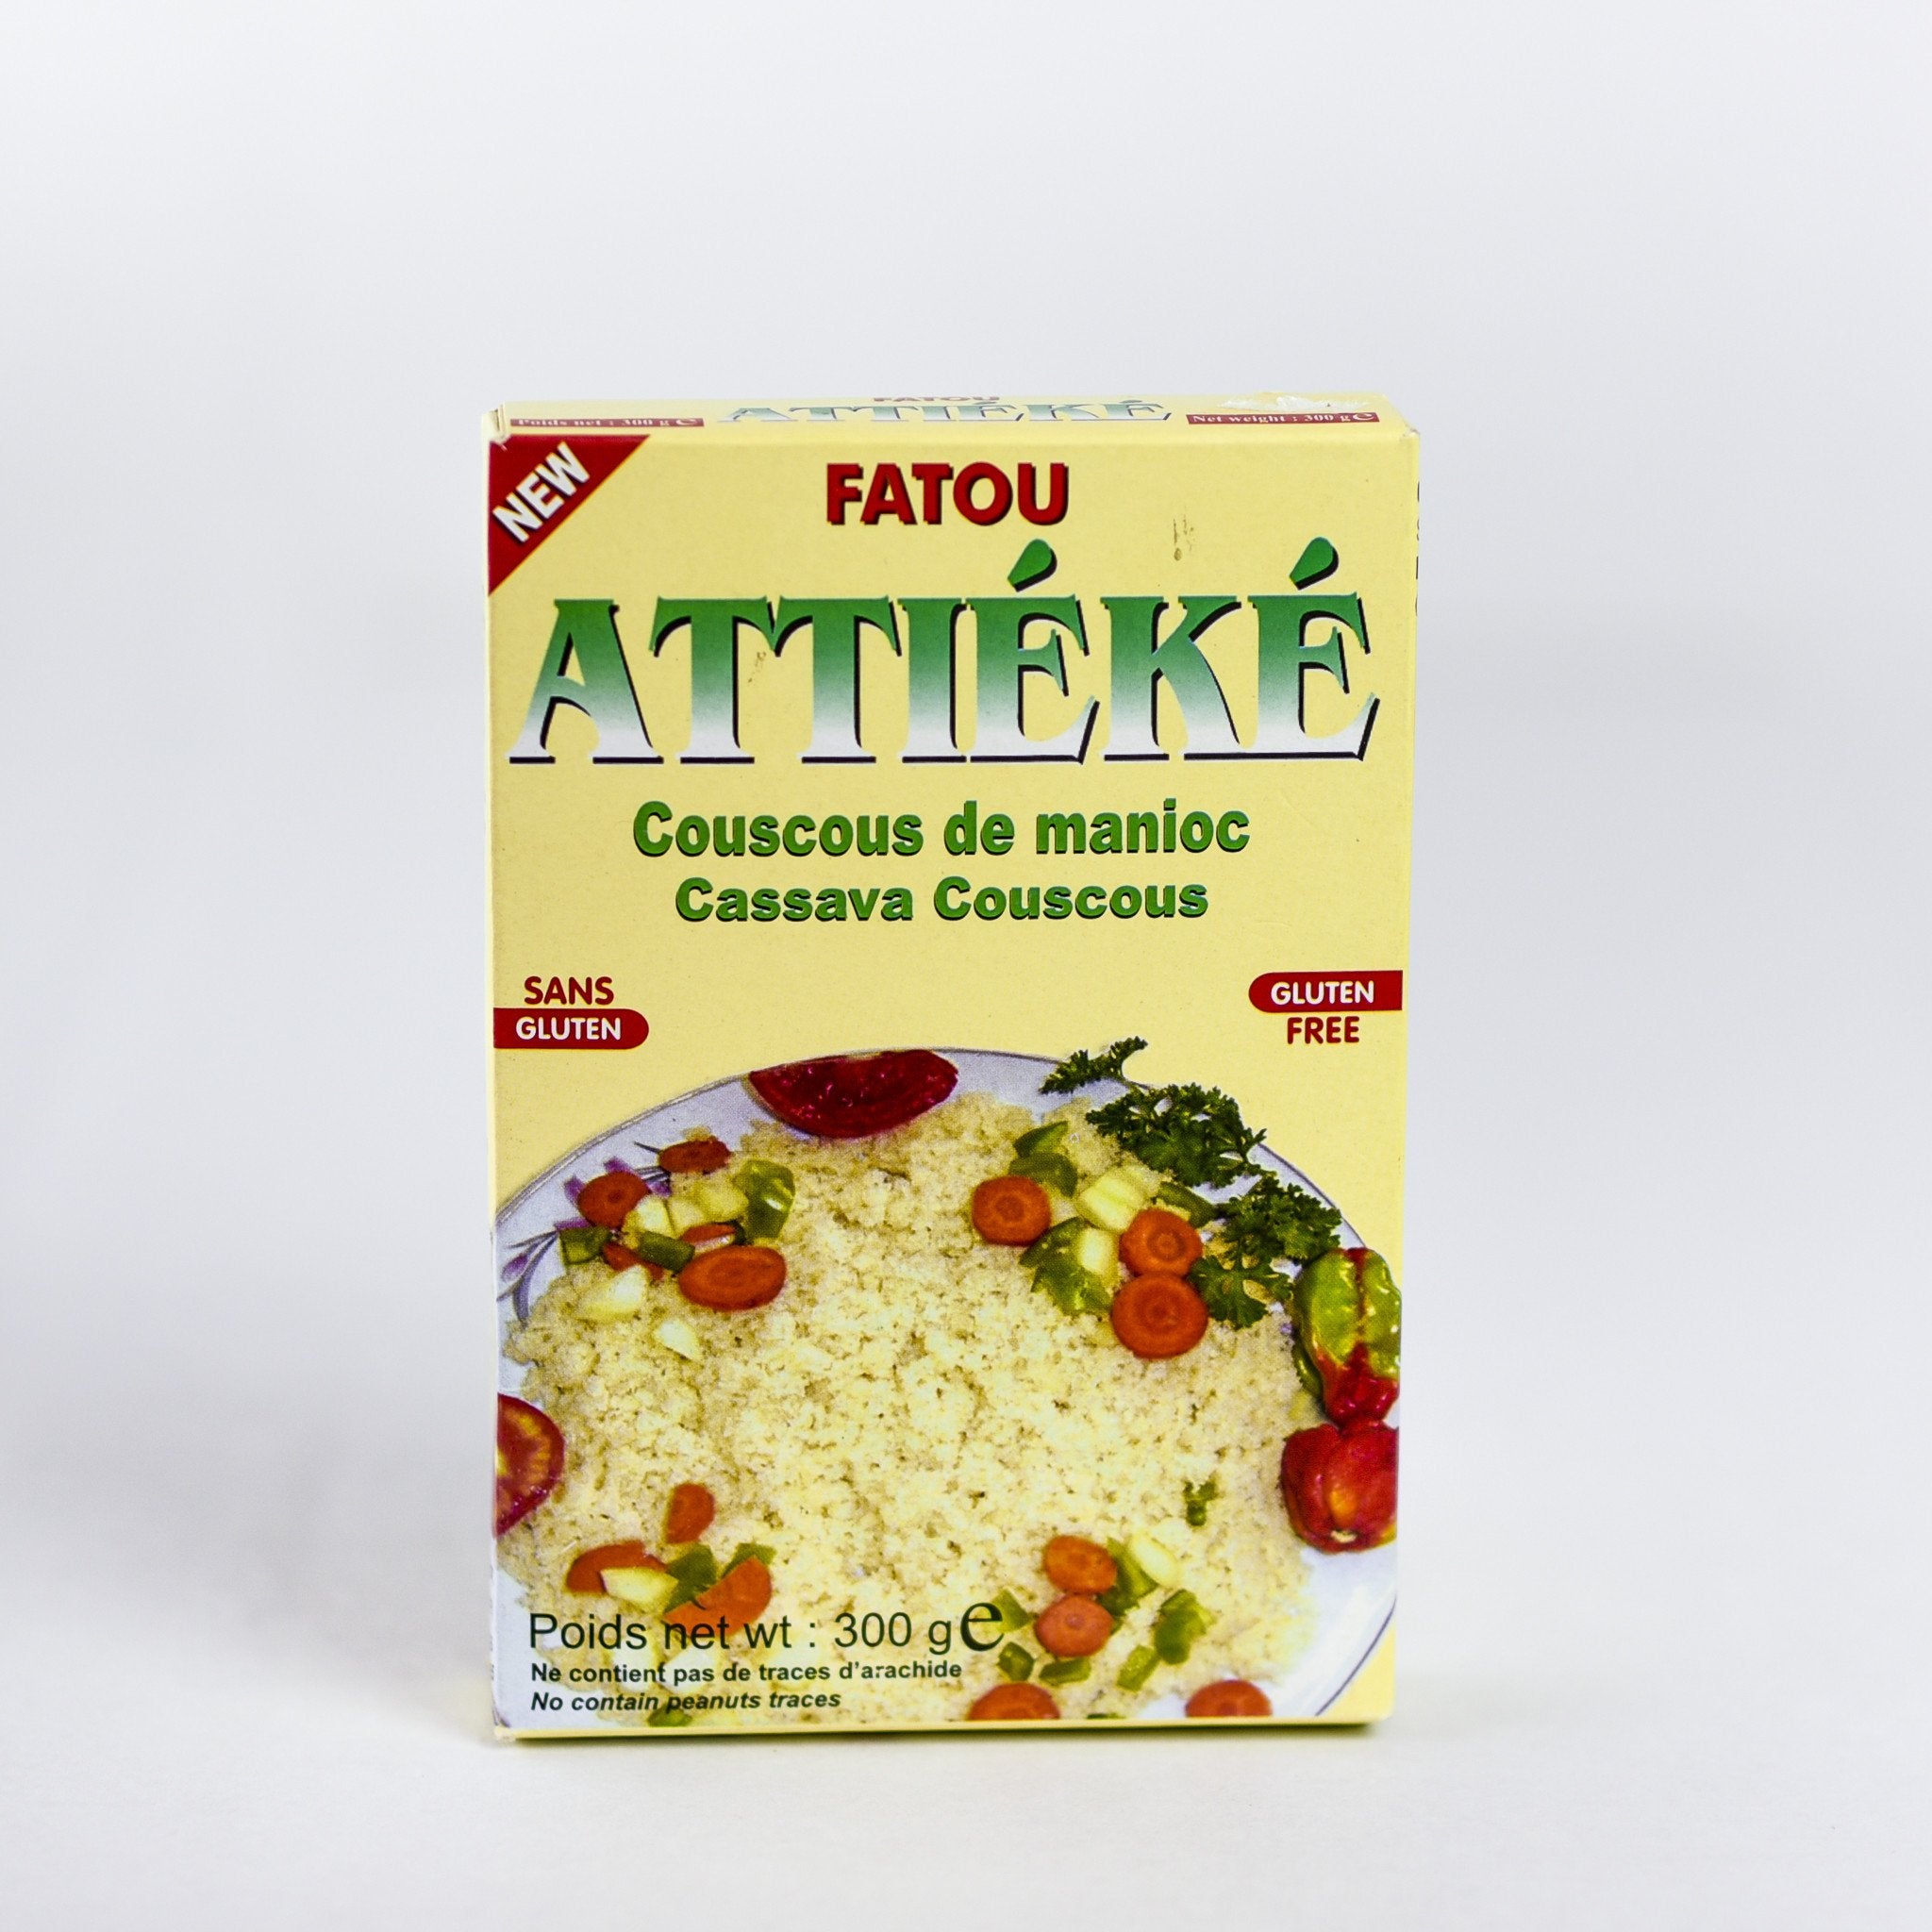 Attieke or Cassava Couscous